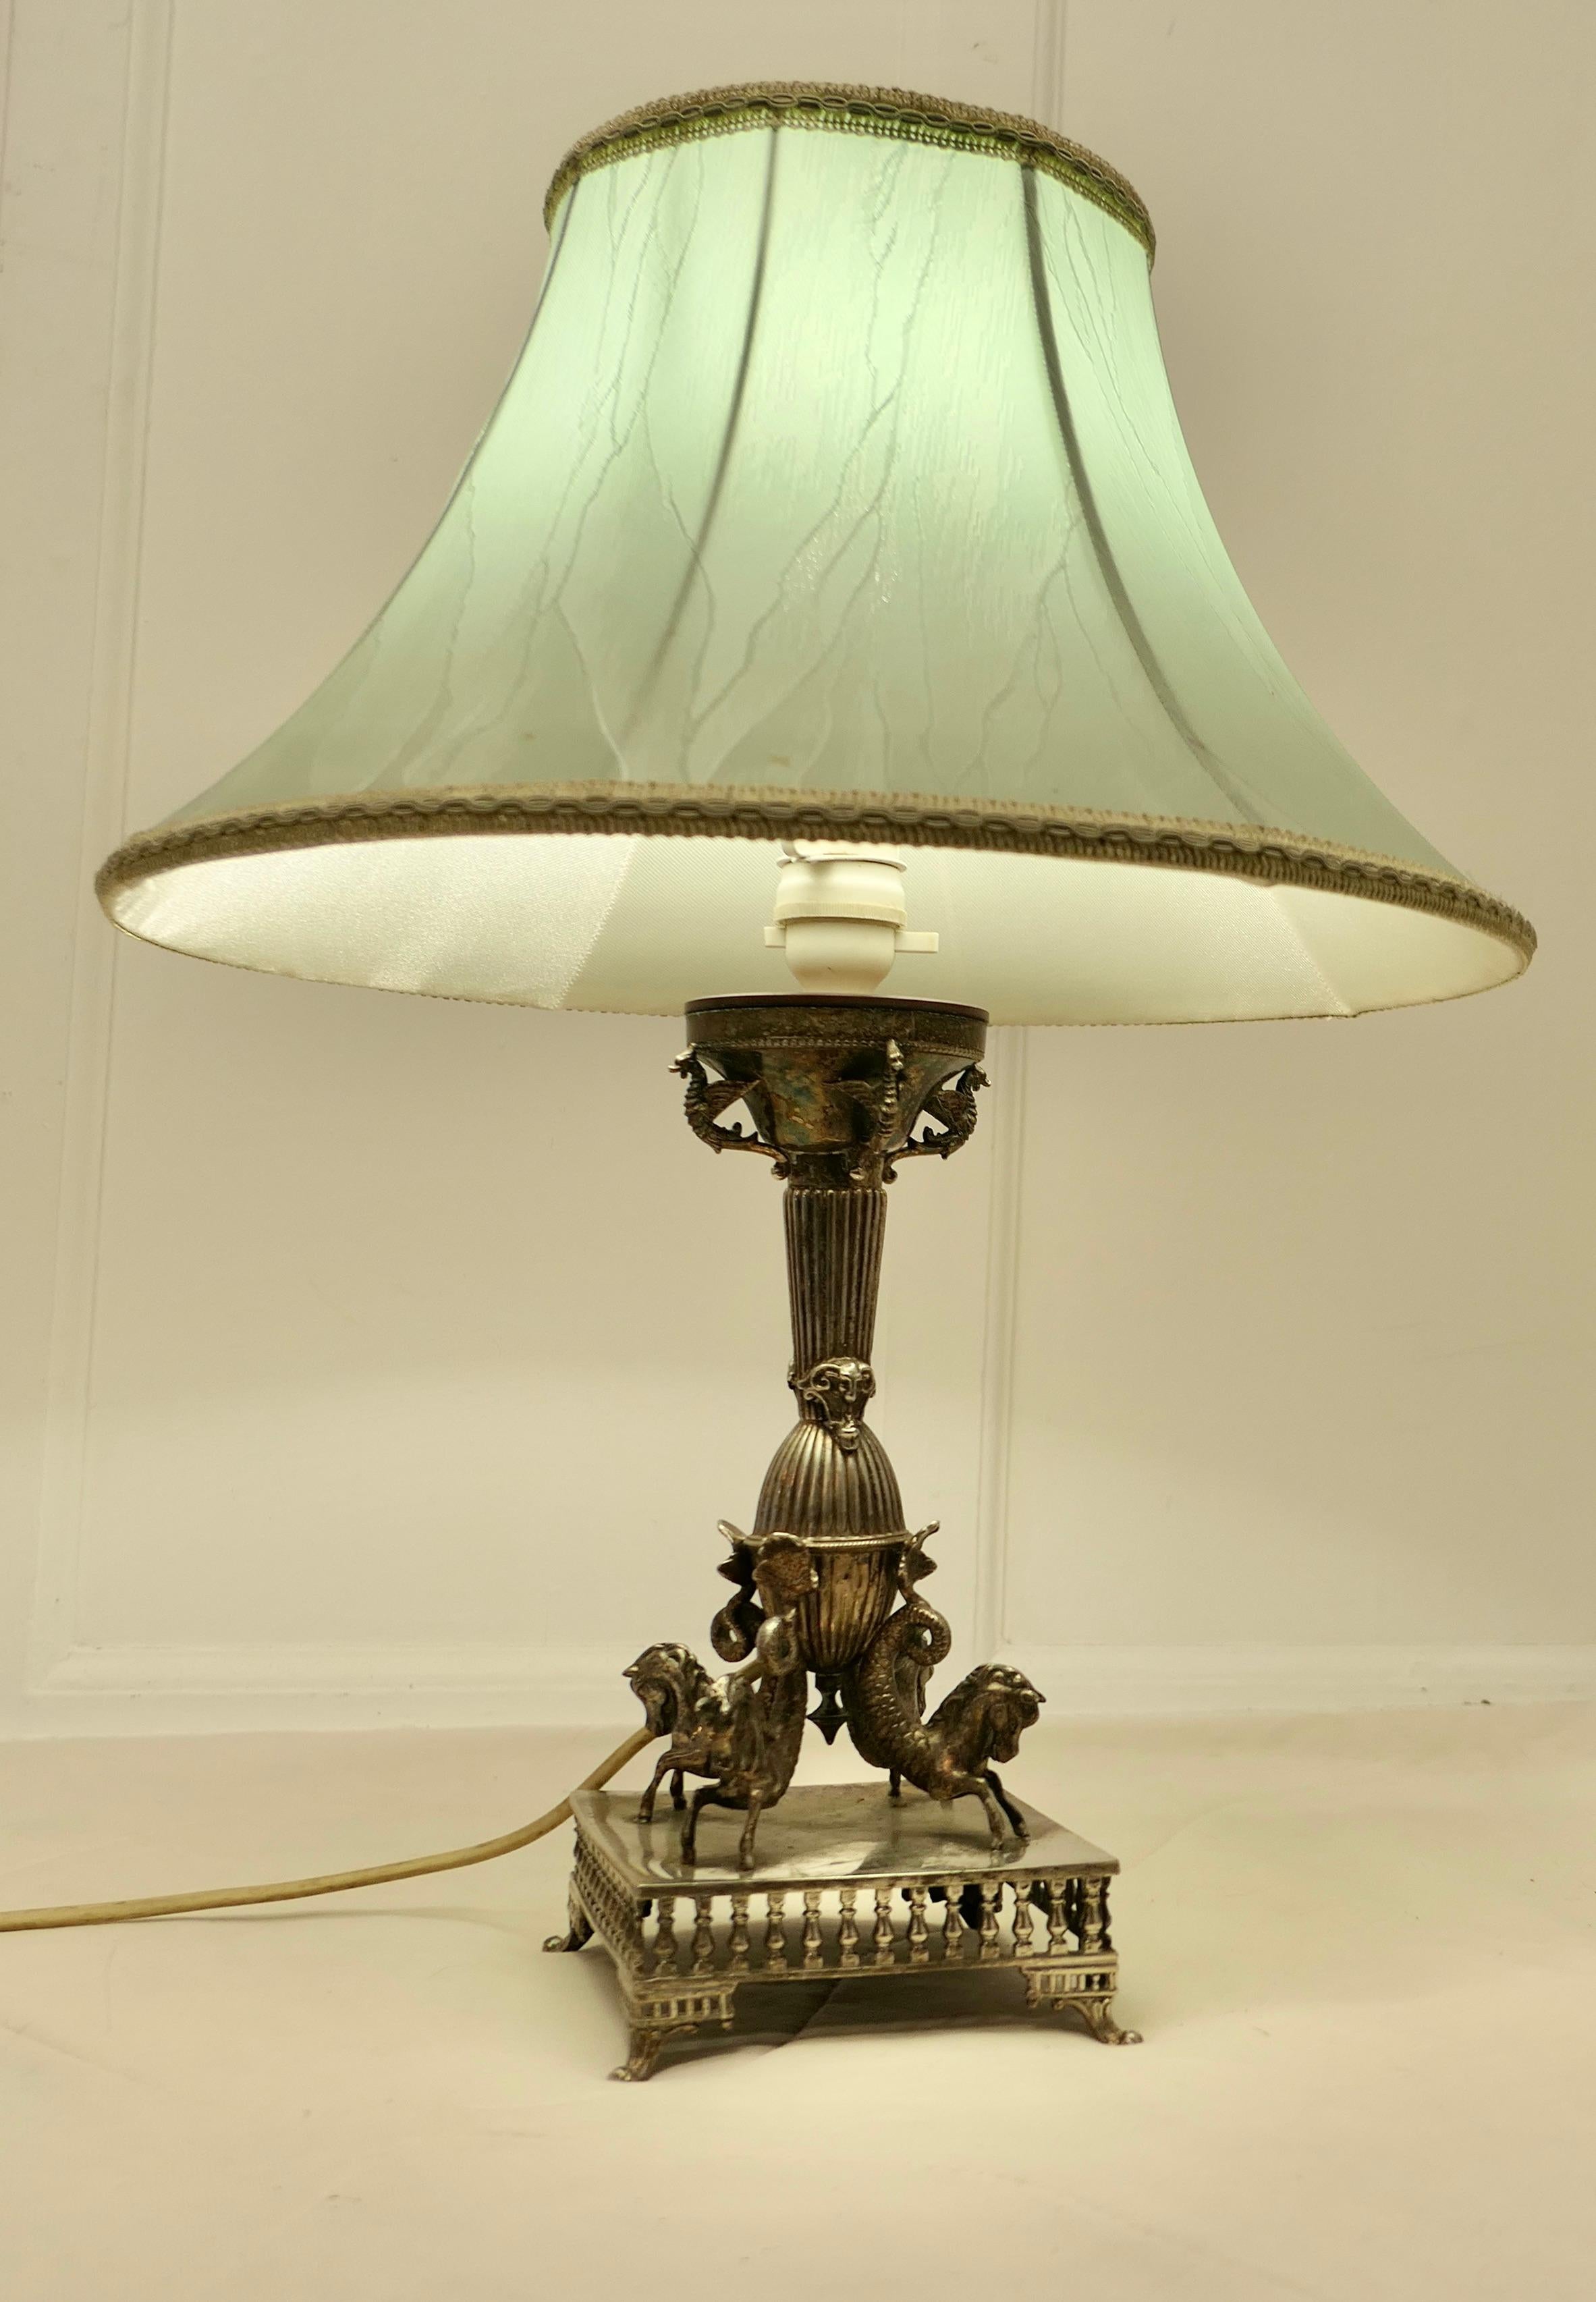 Lampe de table argentée avec personnages mythologiques

Il s'agit d'une pièce très inhabituelle, la lampe est en métal argenté lourd et fonctionne à l'électricité. A l'origine, elle devait être un centre de table ou un bougeoir.
Au bas du stand se